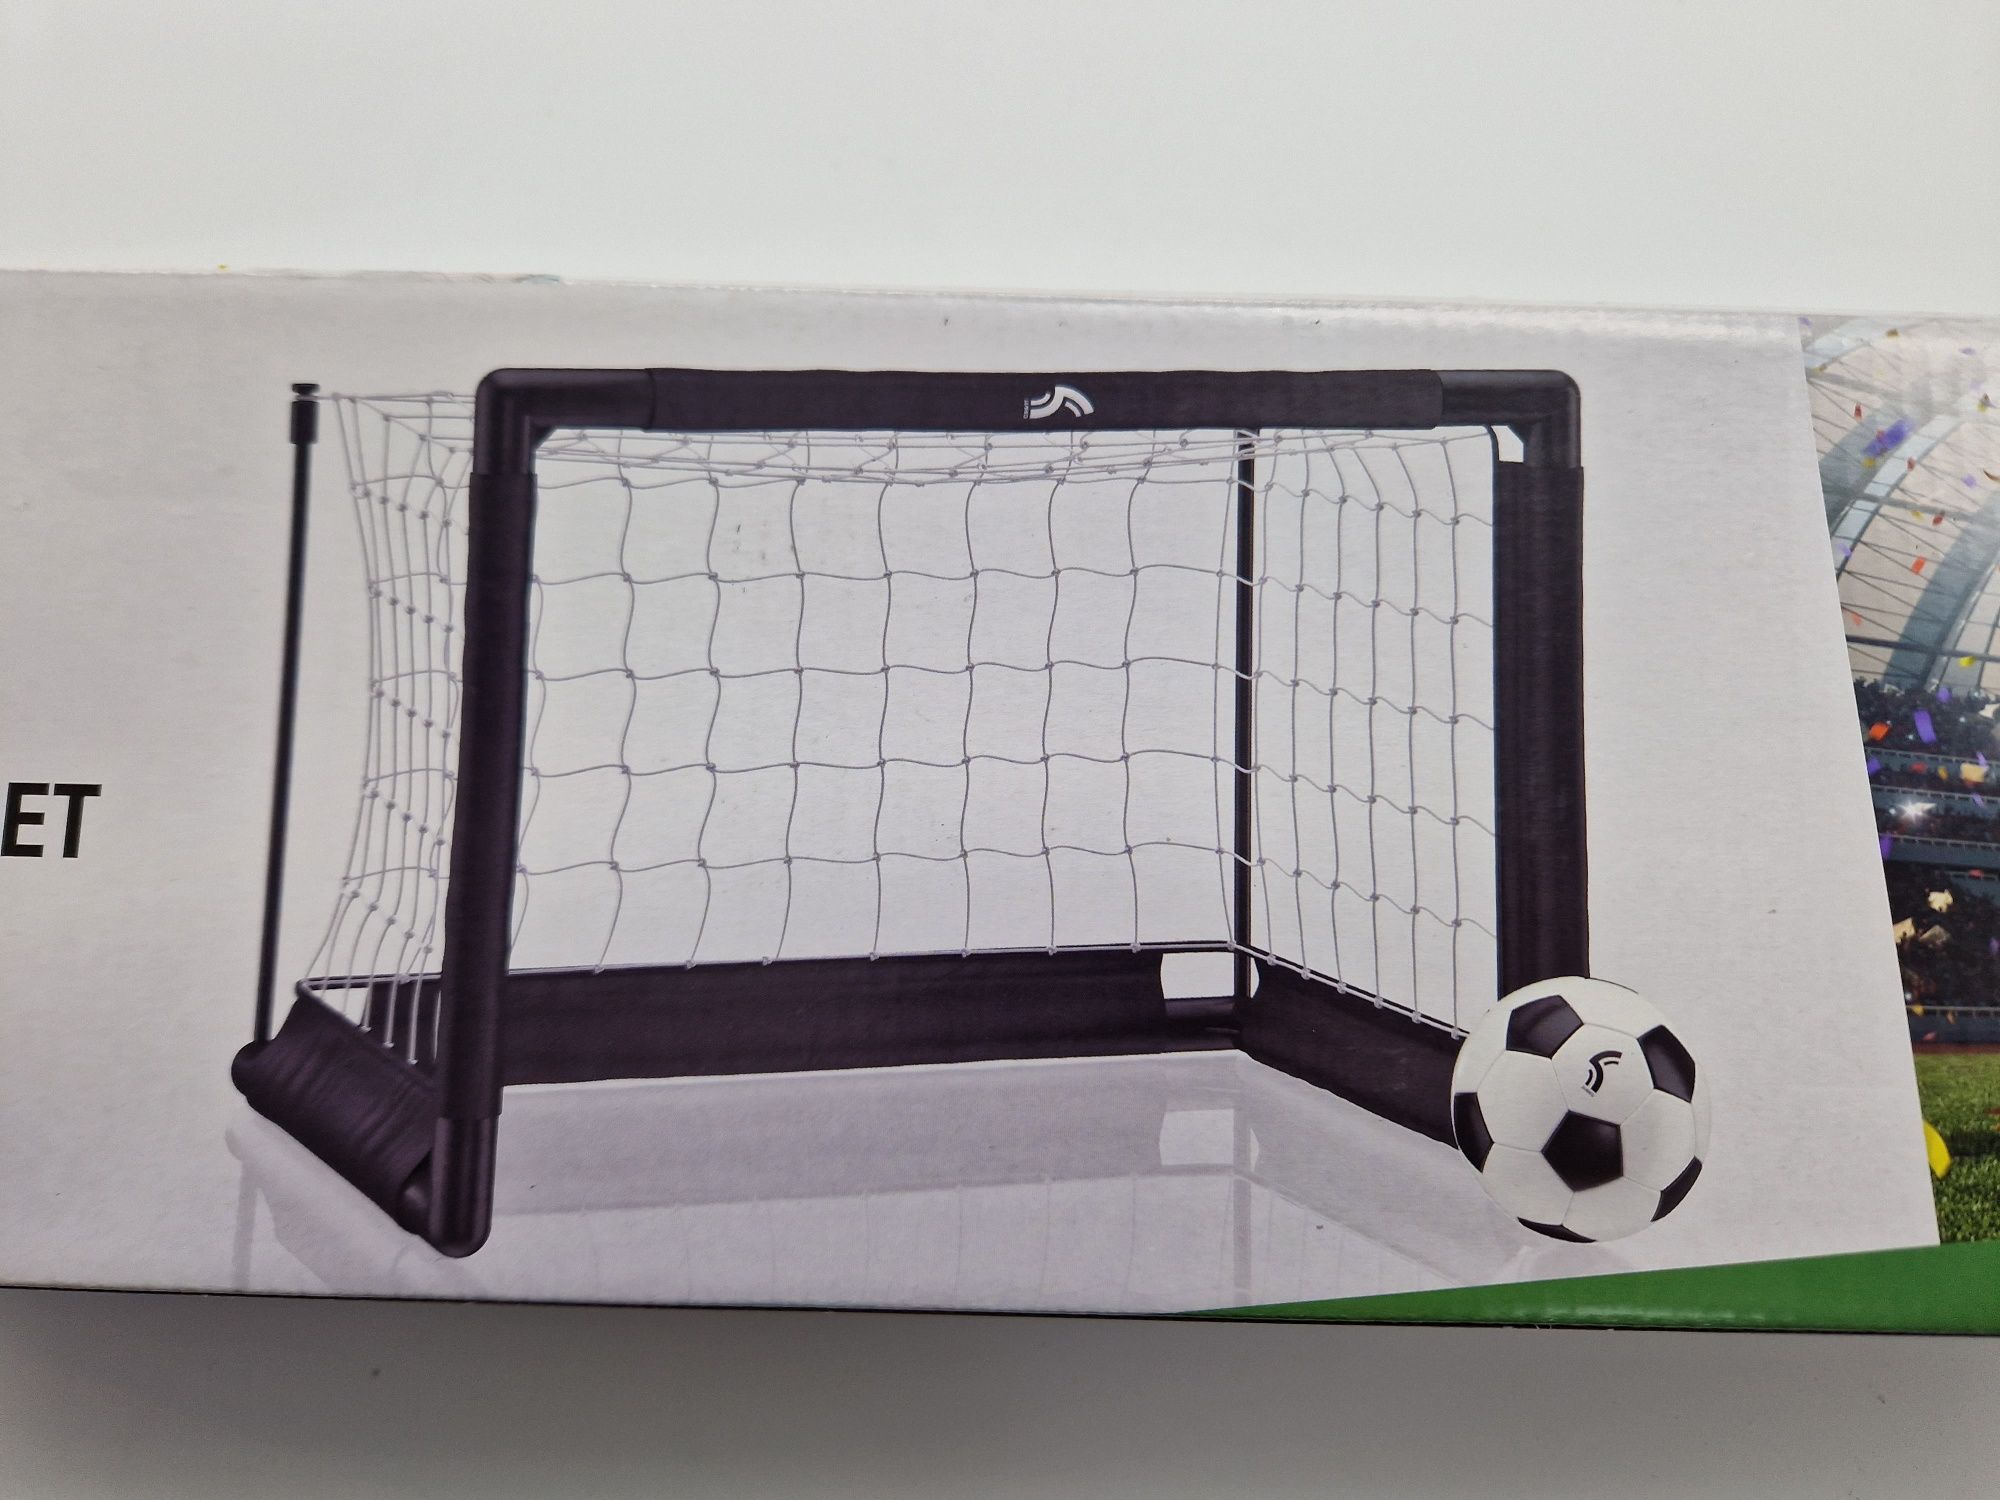 Bramka do piłki nożnej/piłka piankowa,56,5x40,5x41 cm